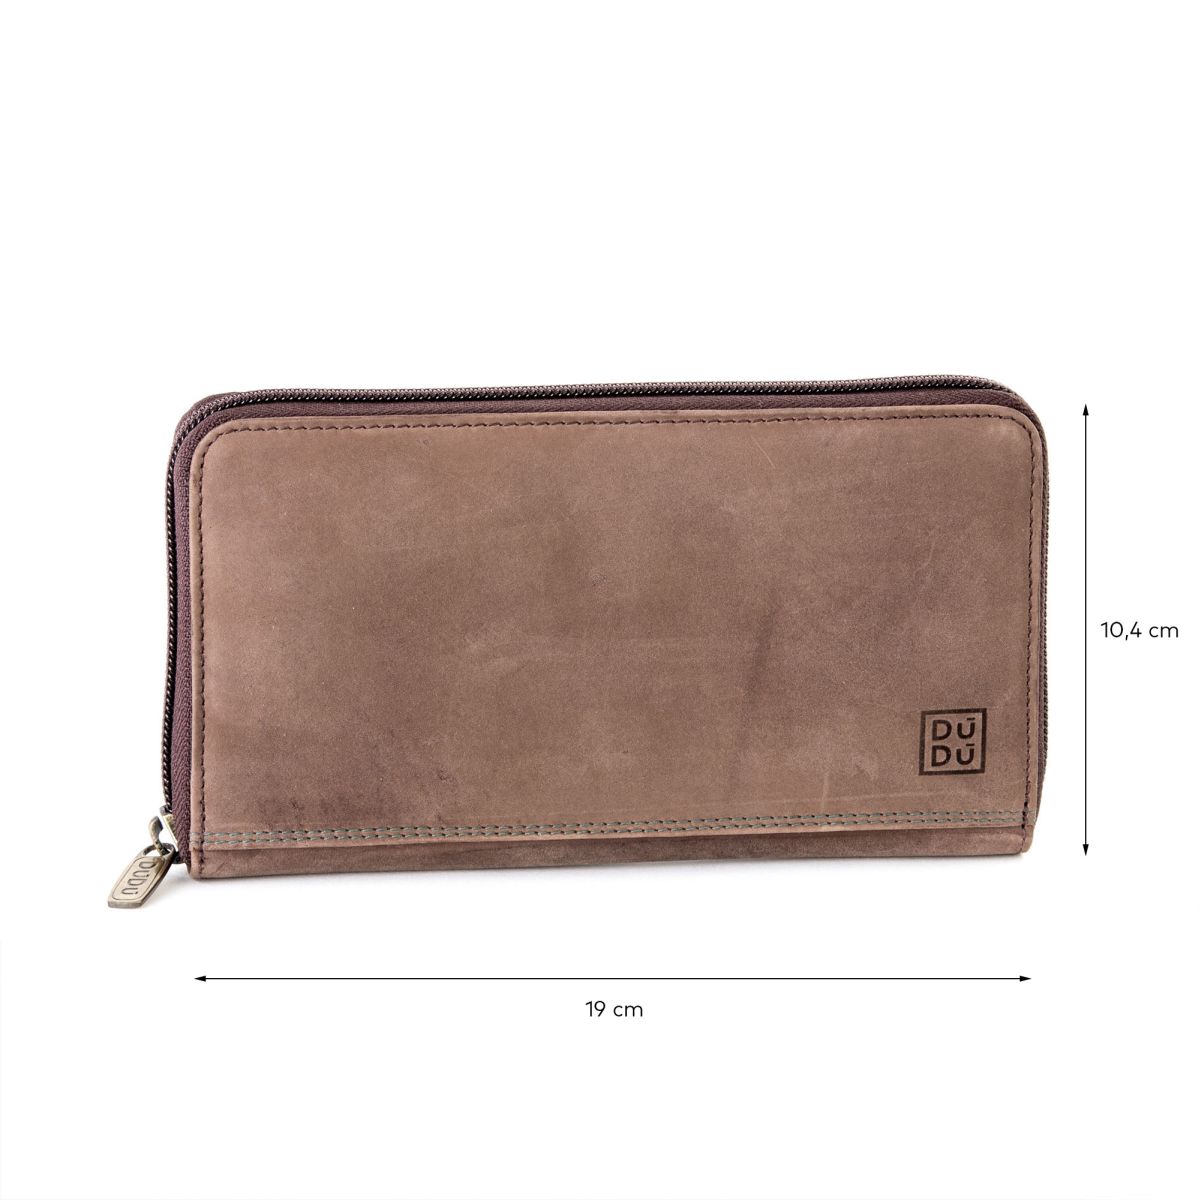 DuDu Ladies Leather Zip Vintage Wallet - Dark Brown